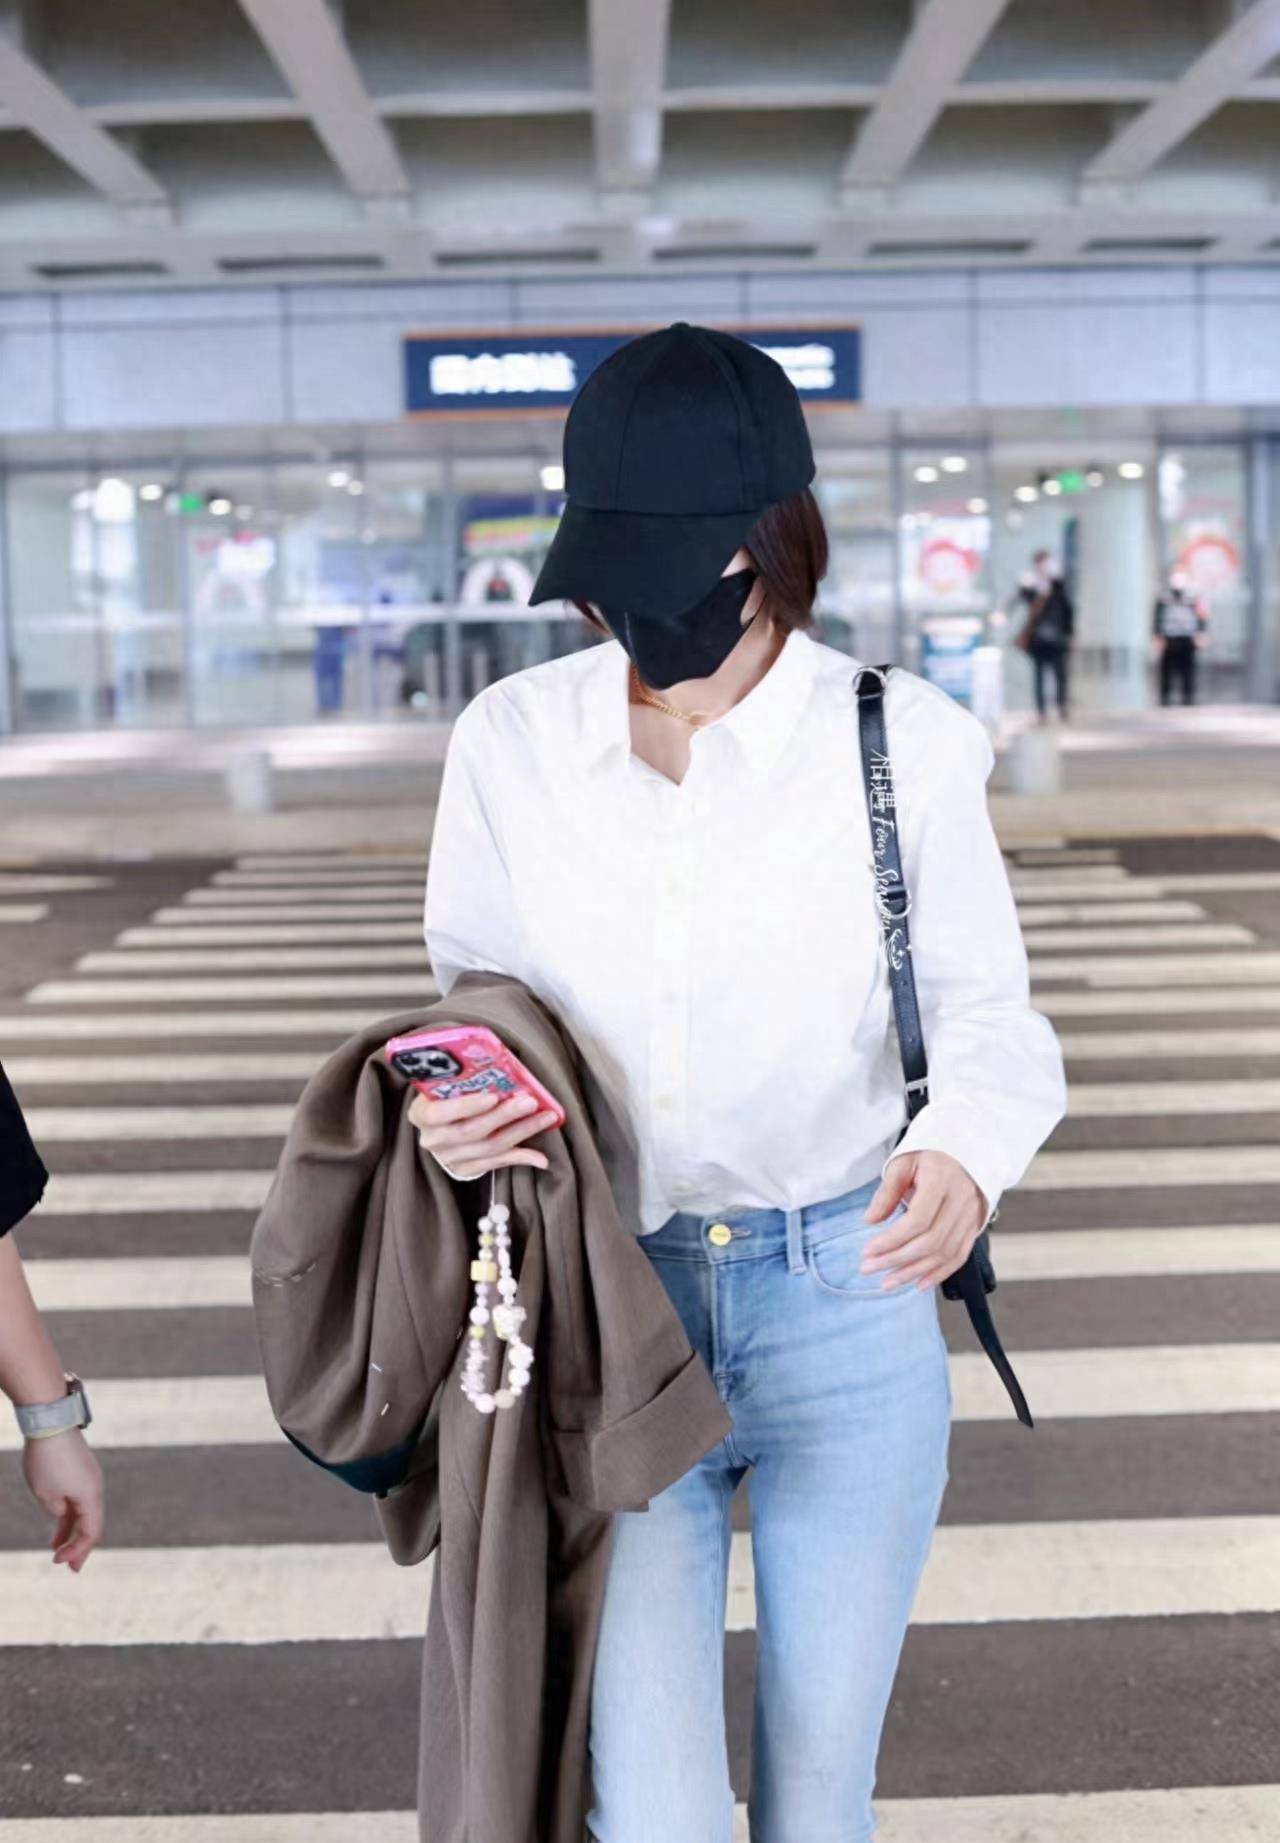 秦岚现身机场,白衬衫搭配牛仔裤,造型简约气质却很出众!